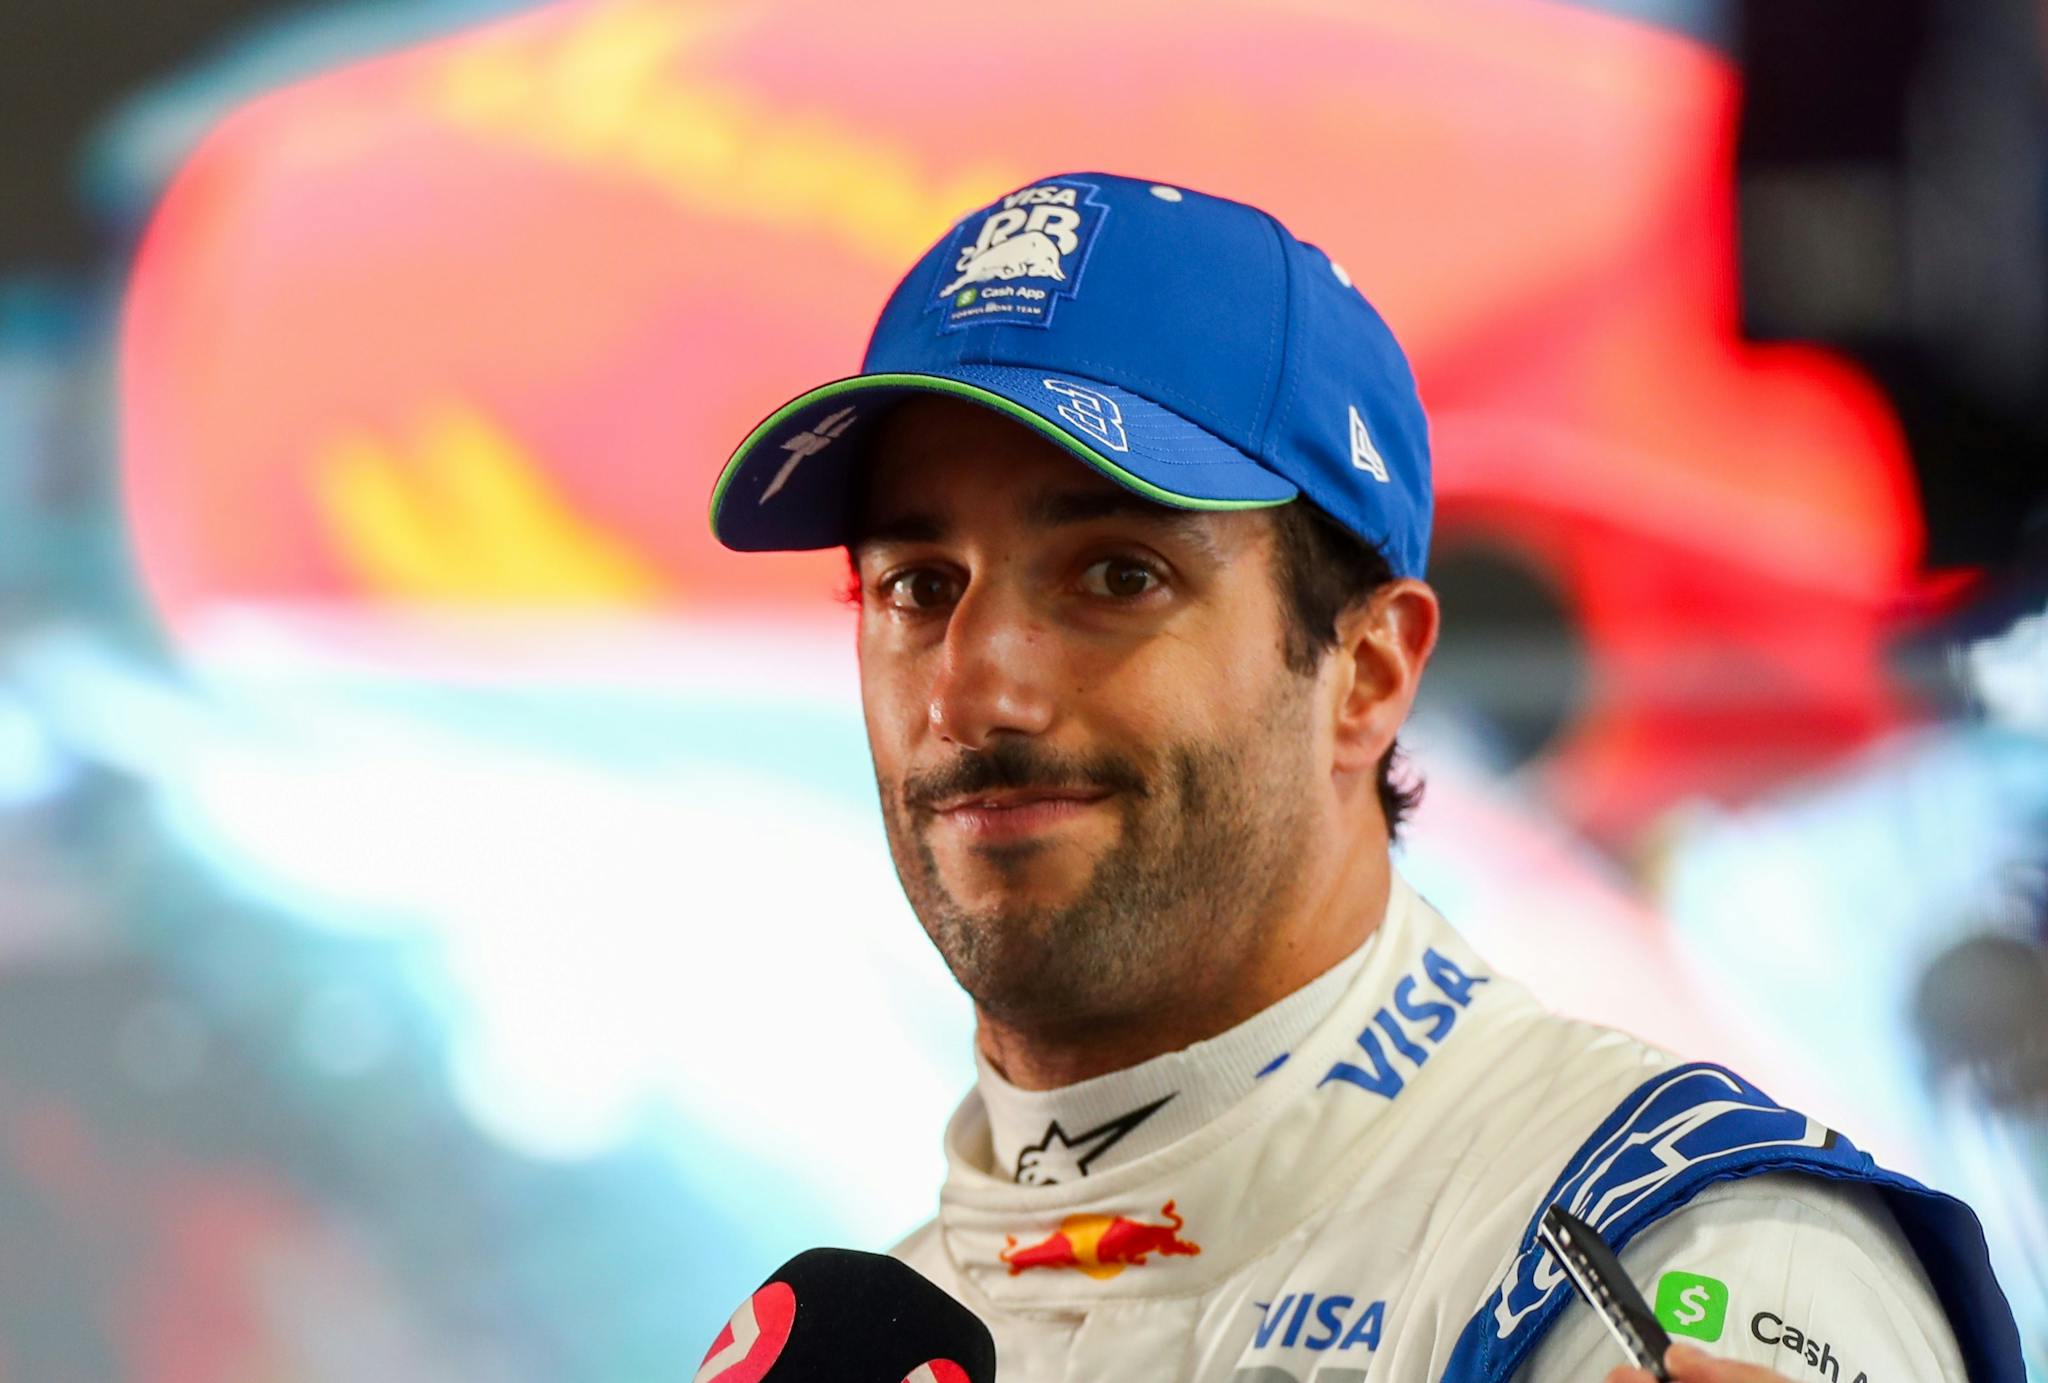 Tajemnicze problemy Ricciardo w F1. Auto jest dobre, ale czasy tego nie pokazują